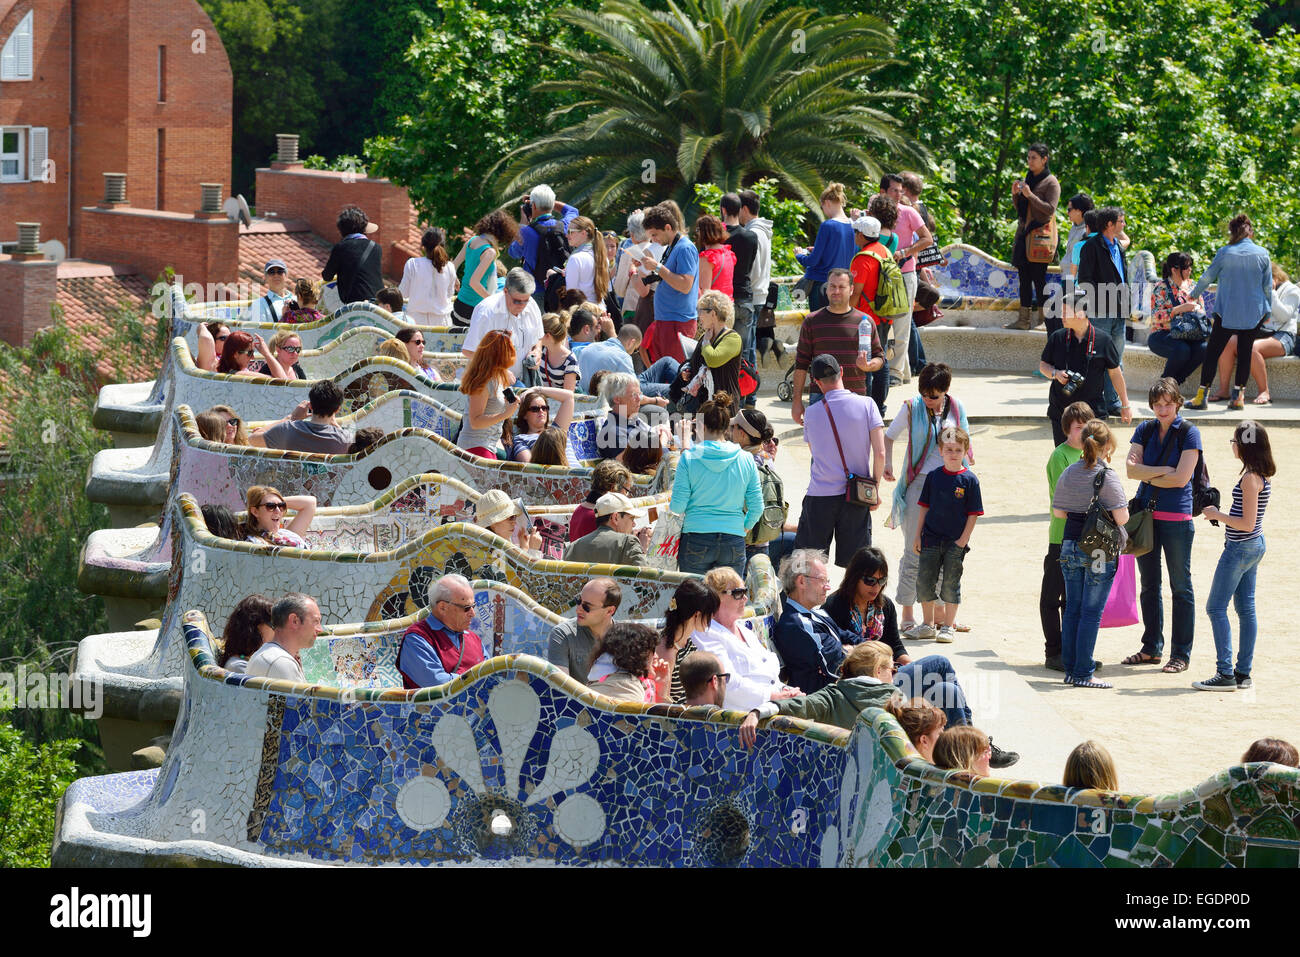 Des gens assis sur banc serpent mosaïque, le parc Guell, architecte Antoni Gaudi, Site du patrimoine mondial de l'UNESCO Parc Guell, l'architecture moderniste catalane, Art Nouveau, Barcelone, Catalogne, Espagne Banque D'Images